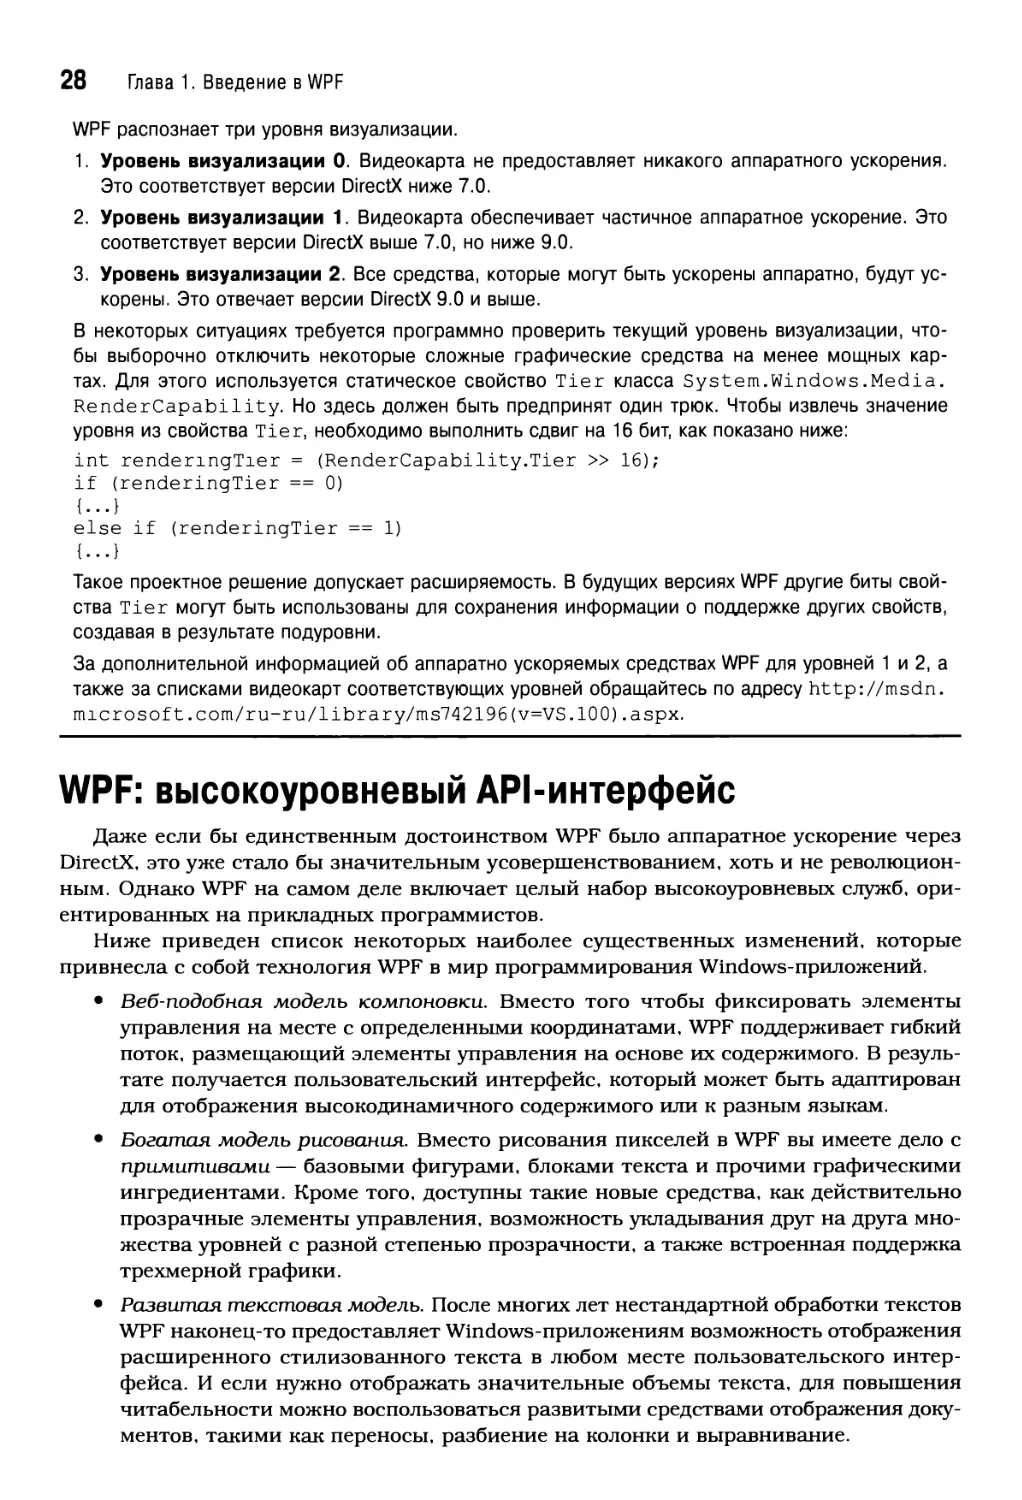 WPF: высокоуровневый API-интерфейс